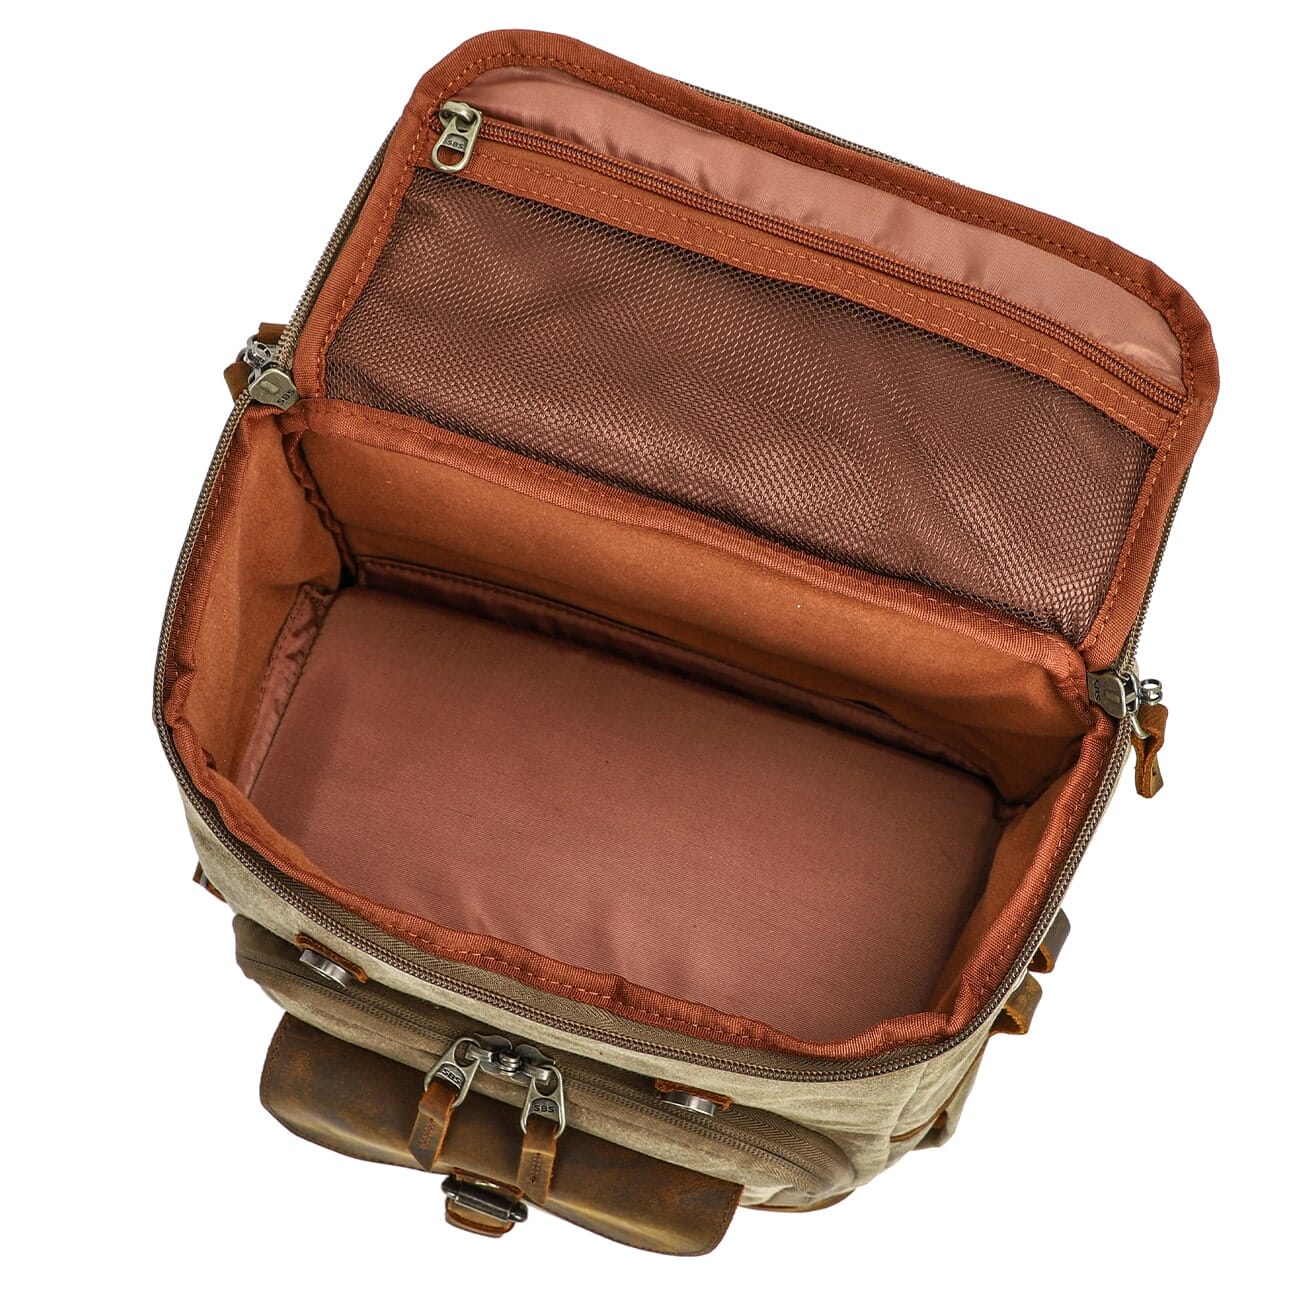 Vintage Leather Camera Backpack | DENALI